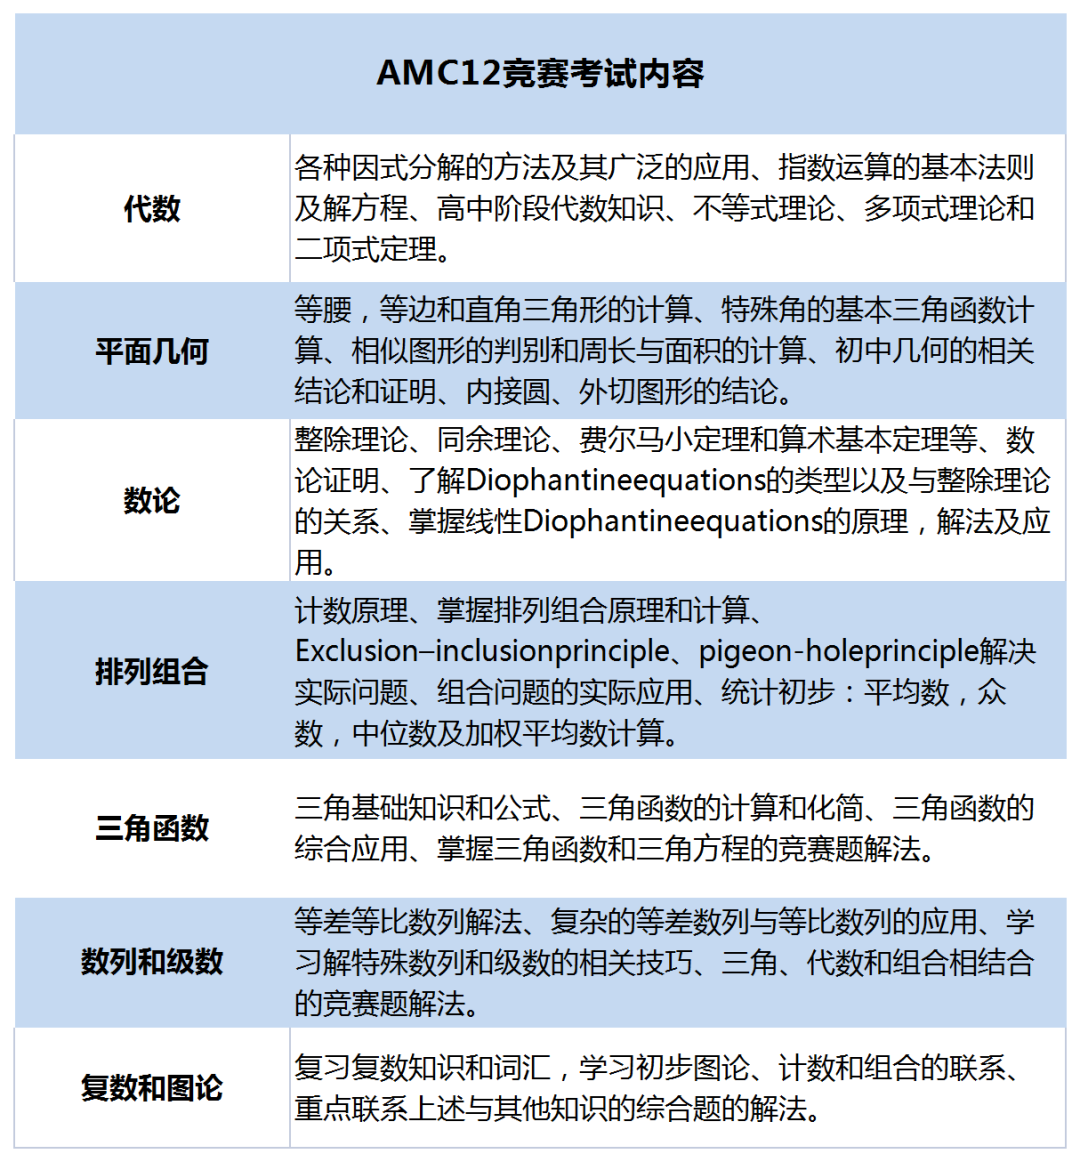 国际竞赛系列 | AMC10和AMC12知识点对比！想要晋级AIME参加AMC10/12竞赛更有优势？